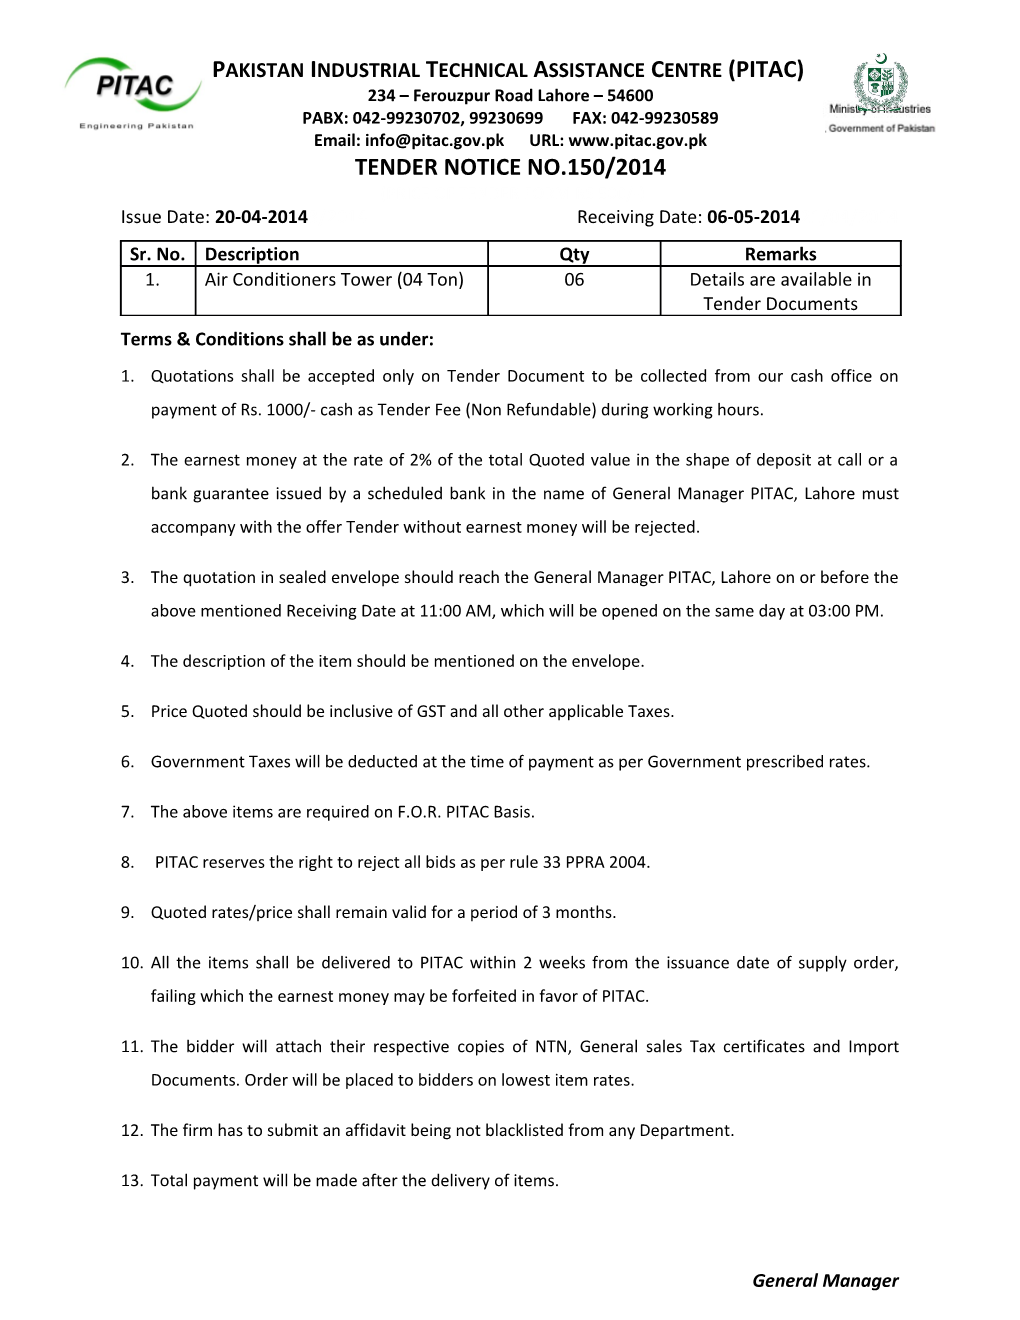 Tender Notice No.150/2014